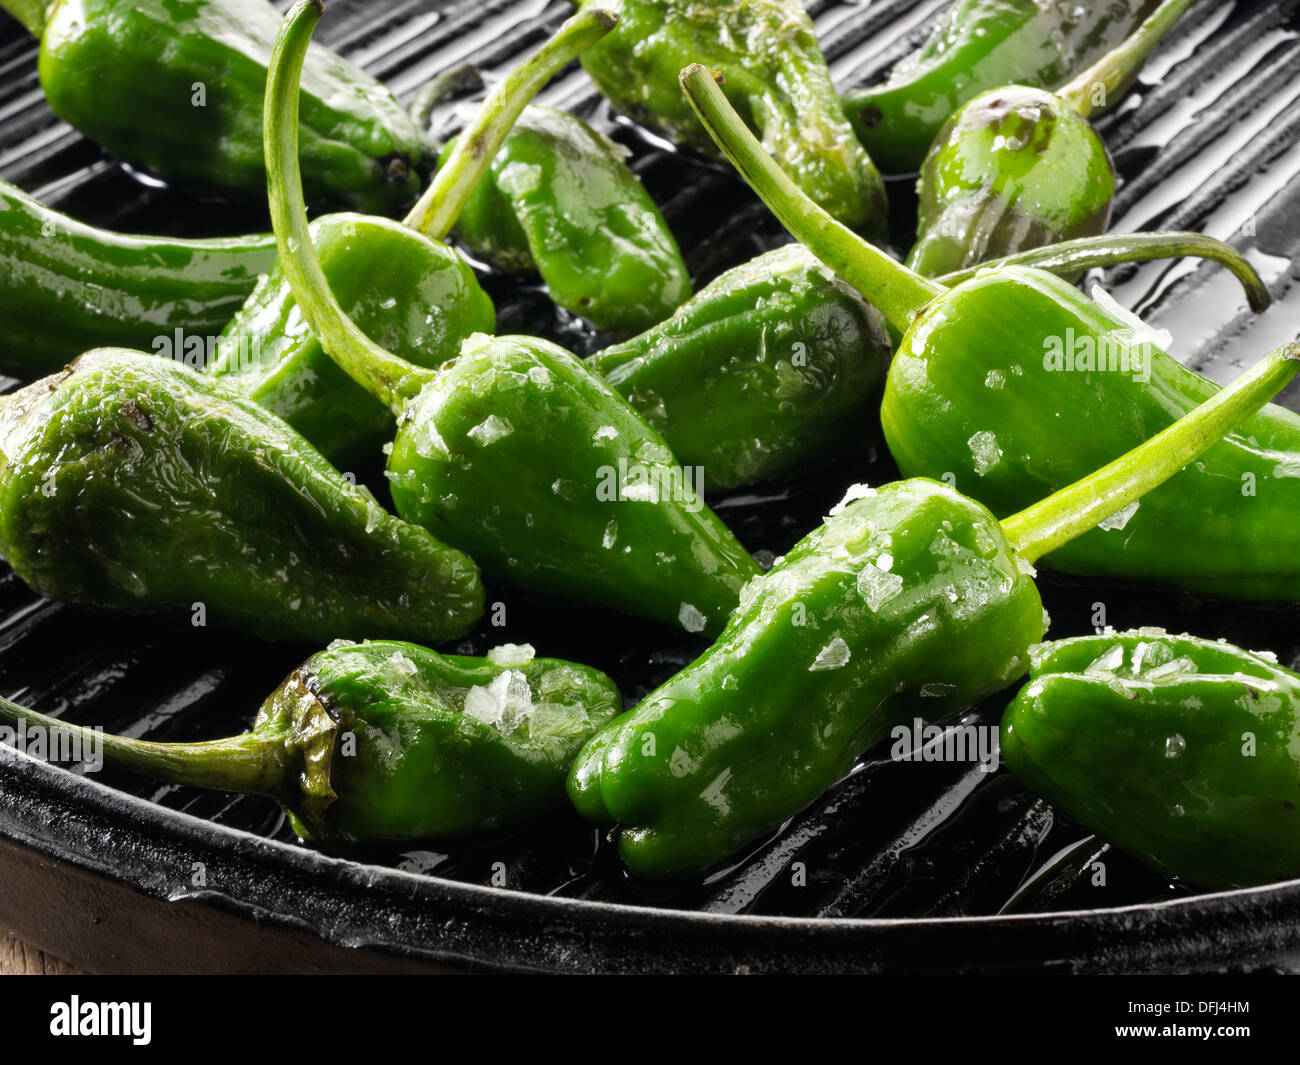 Gekochte gegrillte Paprika oder hebron Paprika, auf einem schwarzen Grill, Nahaufnahme Essen Foto Stillleben Stockfoto